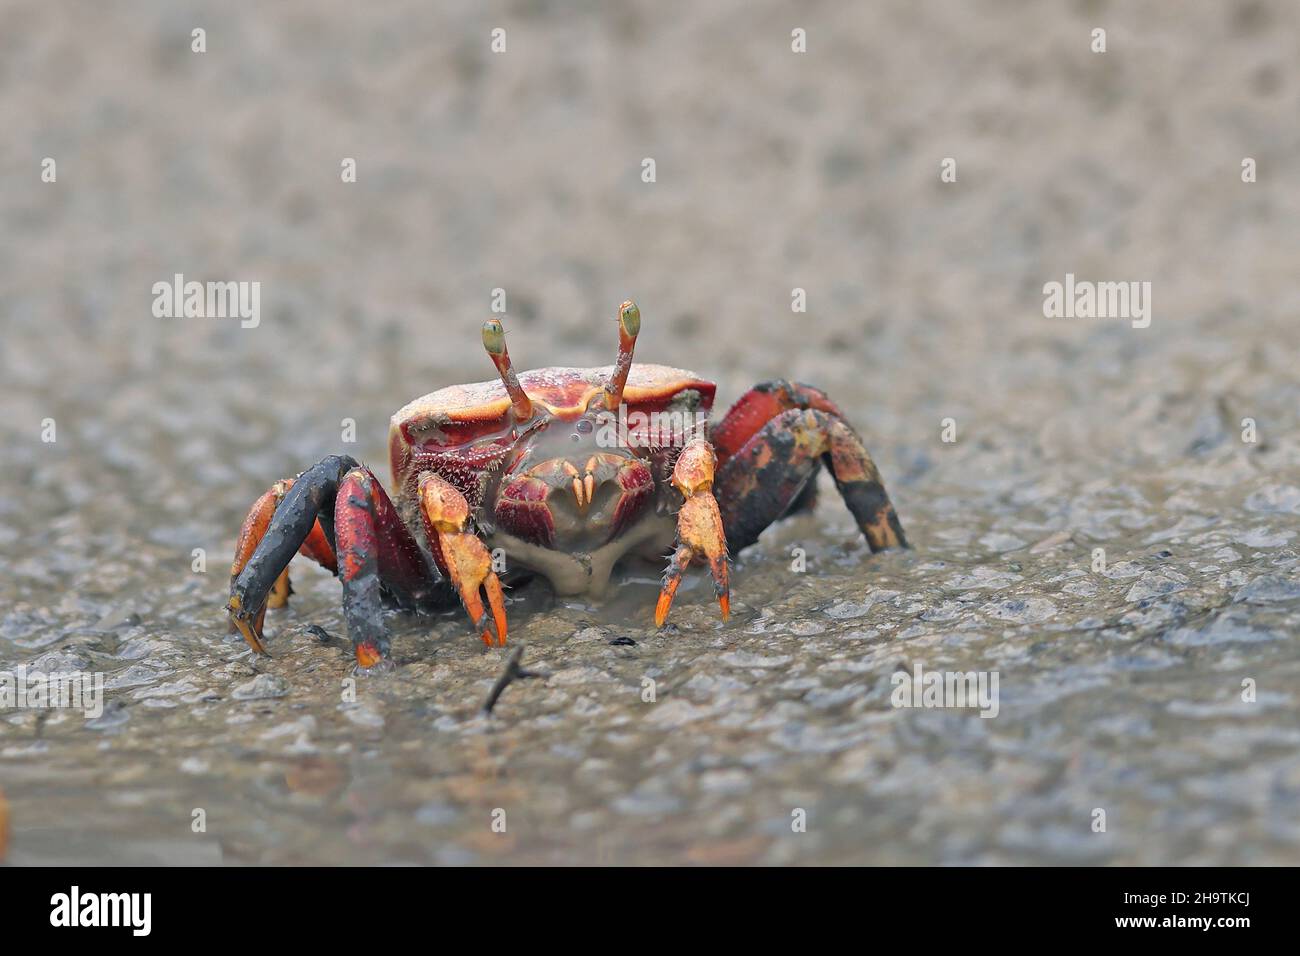 Crabe fiddler marocain, crabe fiddler européen (Uca tangeri), femelle marchant sur la rive, vue de face, Espagne, Andalousie, Sanlucar de Barrameda Banque D'Images